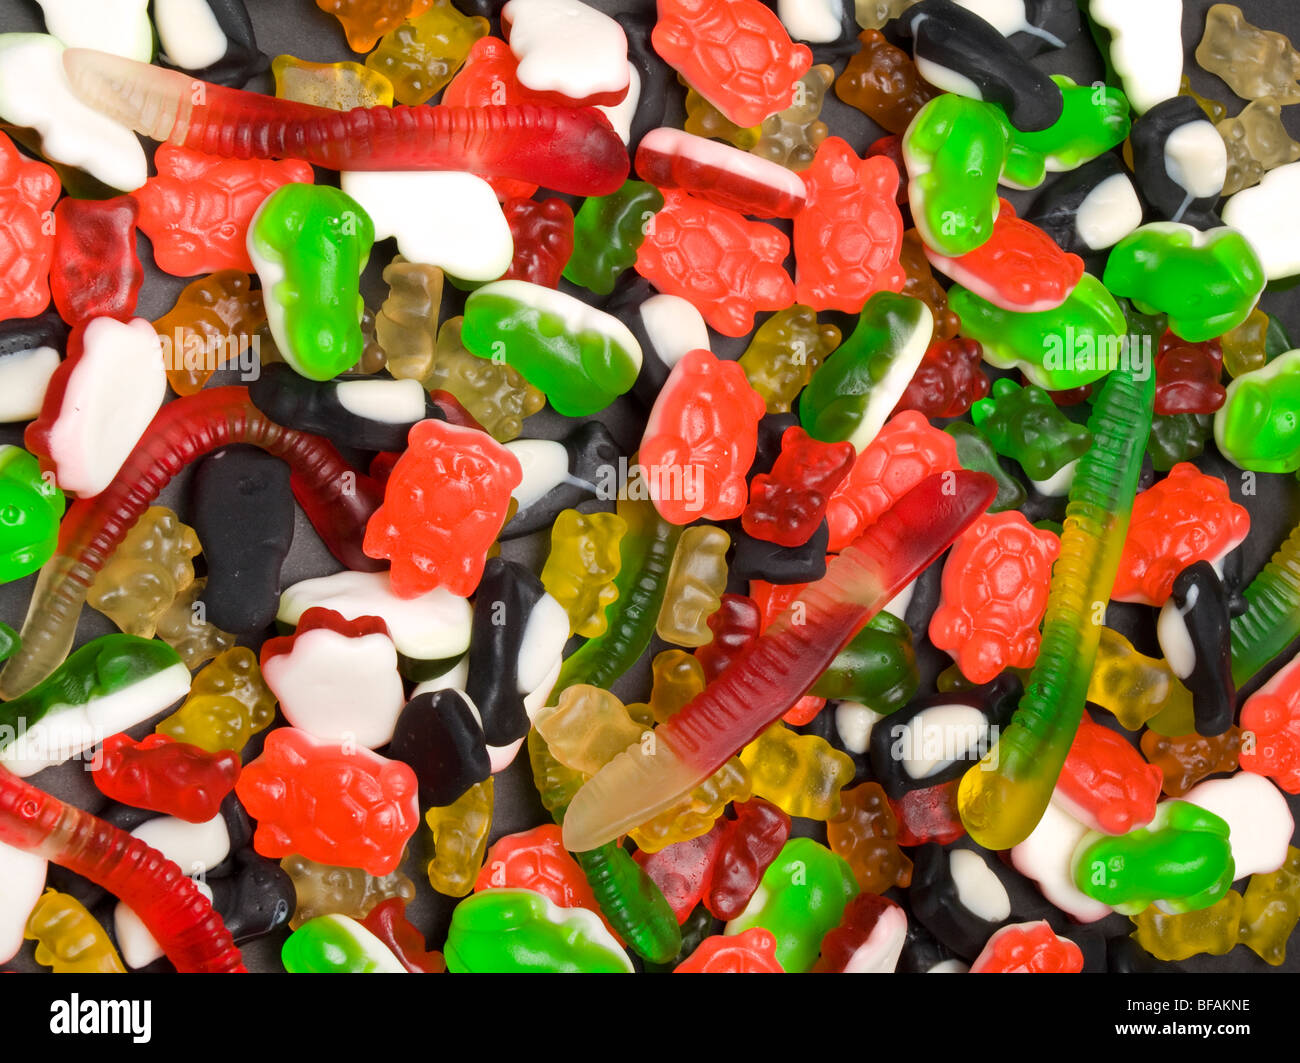 Eine Auswahl an Gummibärchen Bonbons auf einer schwarzen Platte. Stockfoto